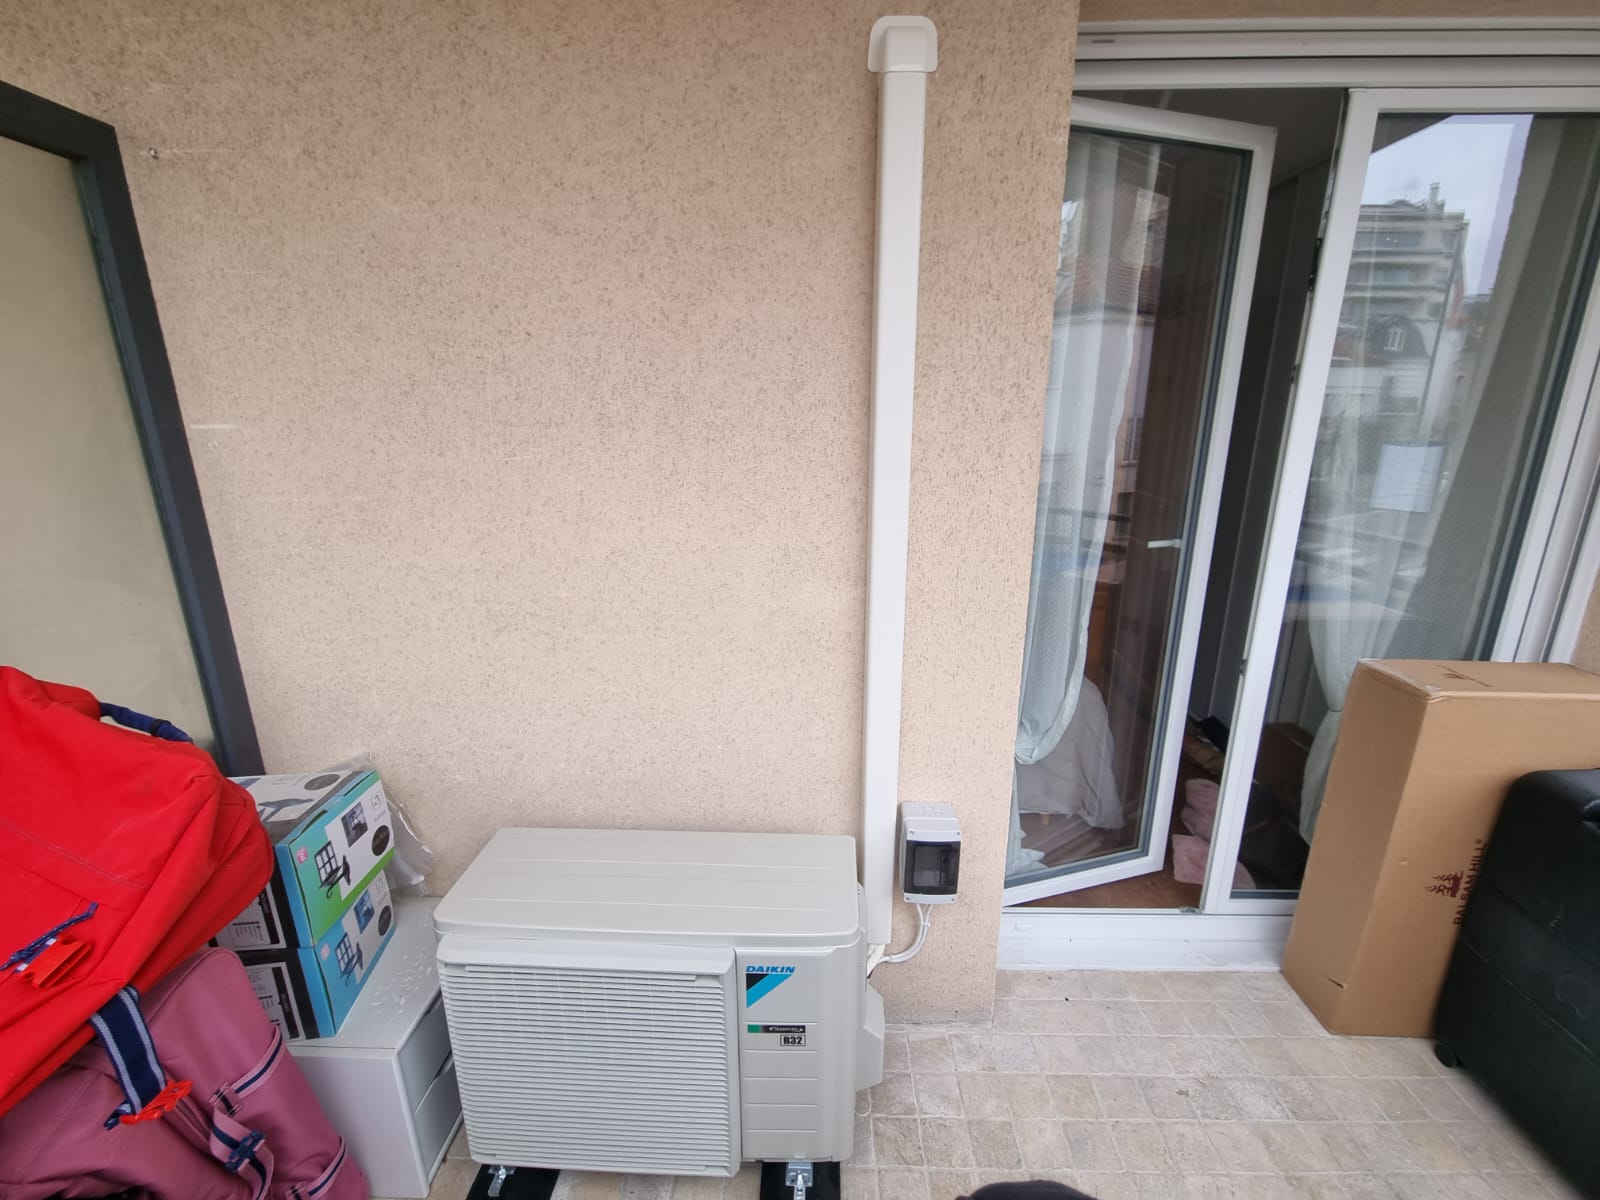 nstallation d'une pompe à chaleur air air Daikin à Montreuil sous-bois-3